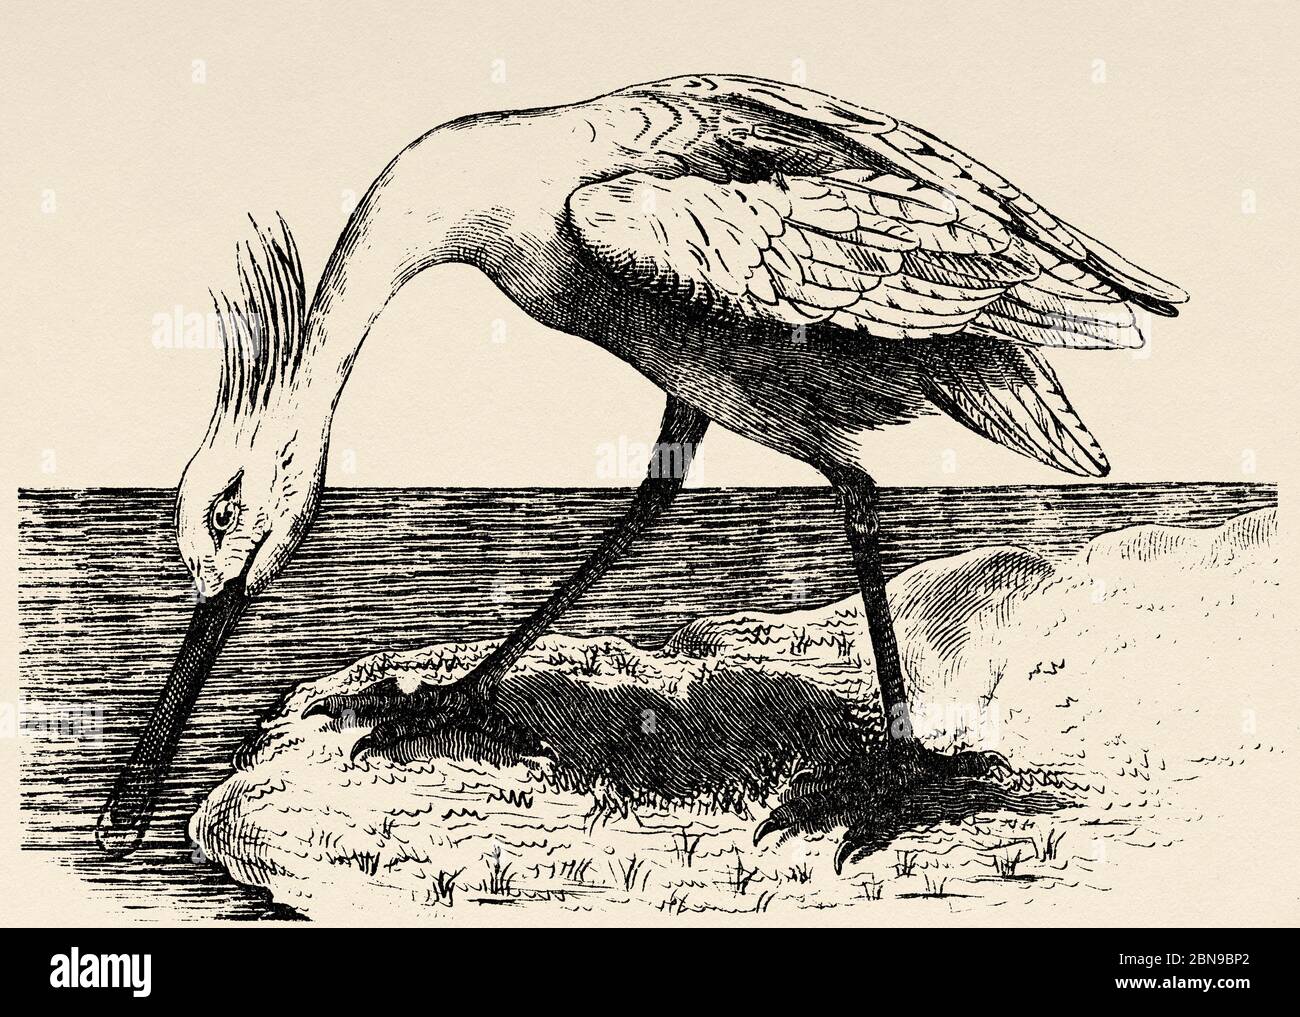 L'espèce de bec commun (Platalea leucorodia) d'oiseau pécananiforme de la famille des Threskiornithidae habite l'Eurasie et l'Afrique. C'est un grand oiseau aquatique de wader. Ancienne illustration d'animal gravée du XIXe siècle Banque D'Images